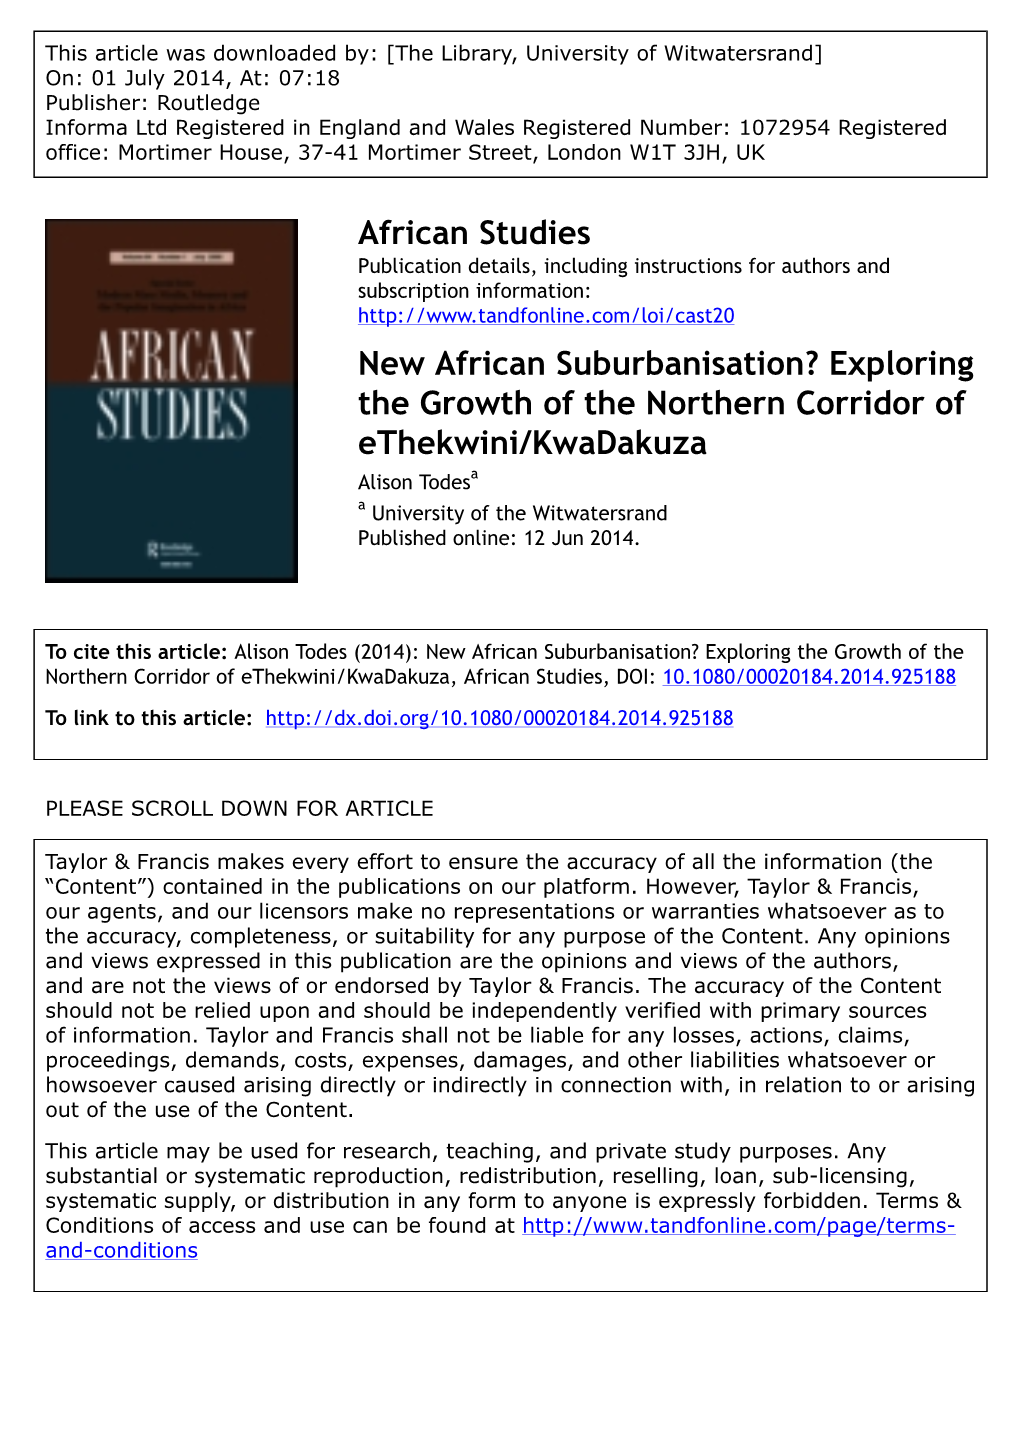 New African Suburbanisation? Exploring the Growth of the Northern Corridor of Ethekwini/Kwadakuza